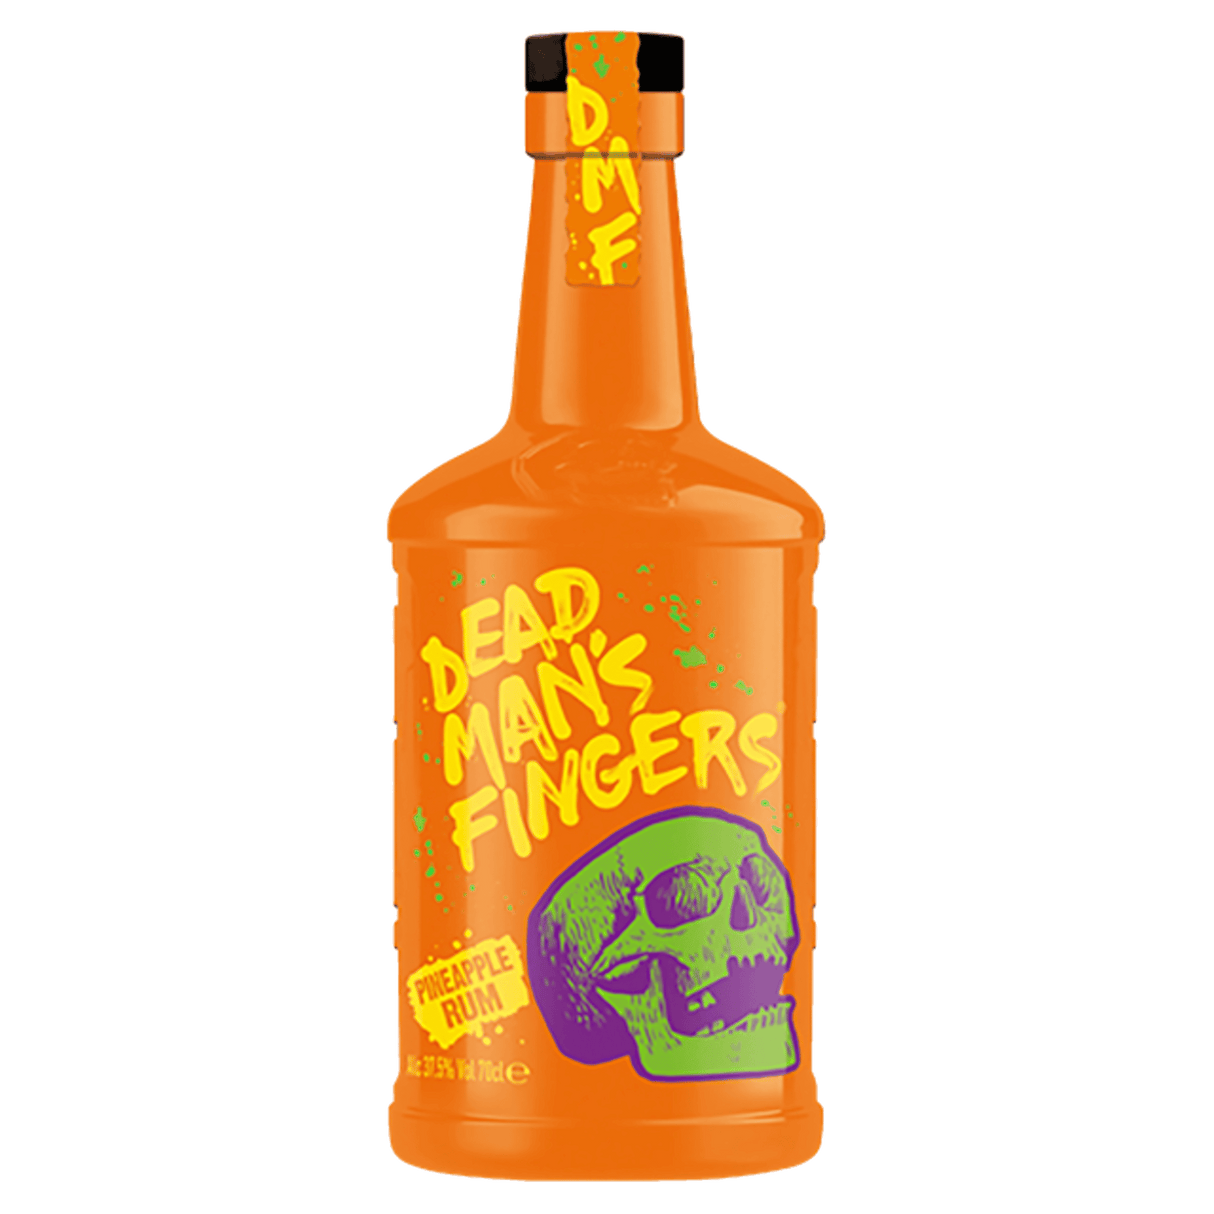 Dead Man's Fingers Pineapple Rum 700ml